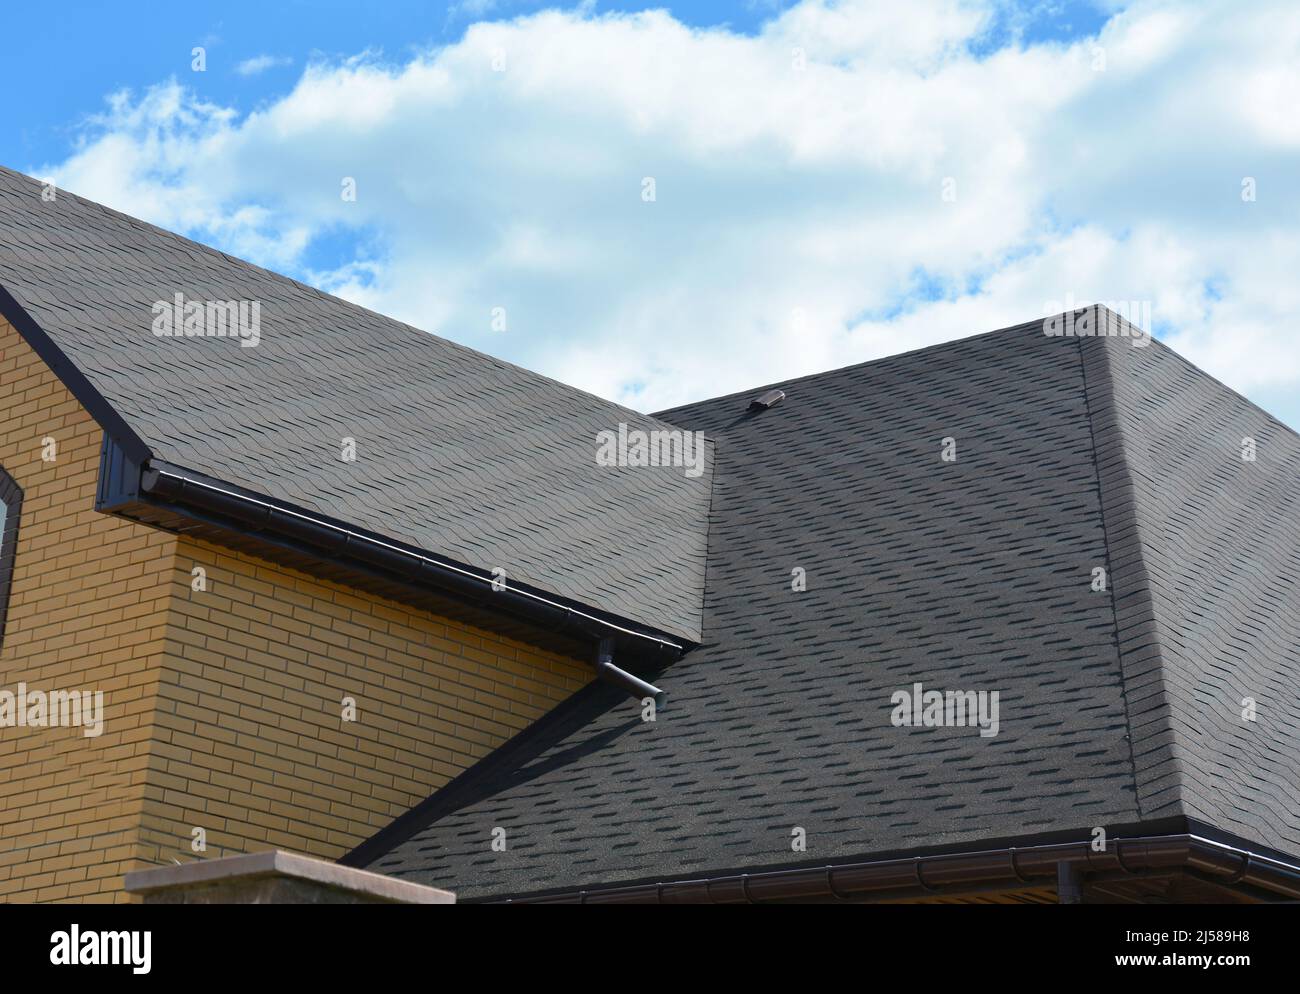 Wasserabdichtung Dachproblematik mit Asphaltschindeln und Regenrinne. Asphaltschindeln Dachkonstruktion. Stockfoto